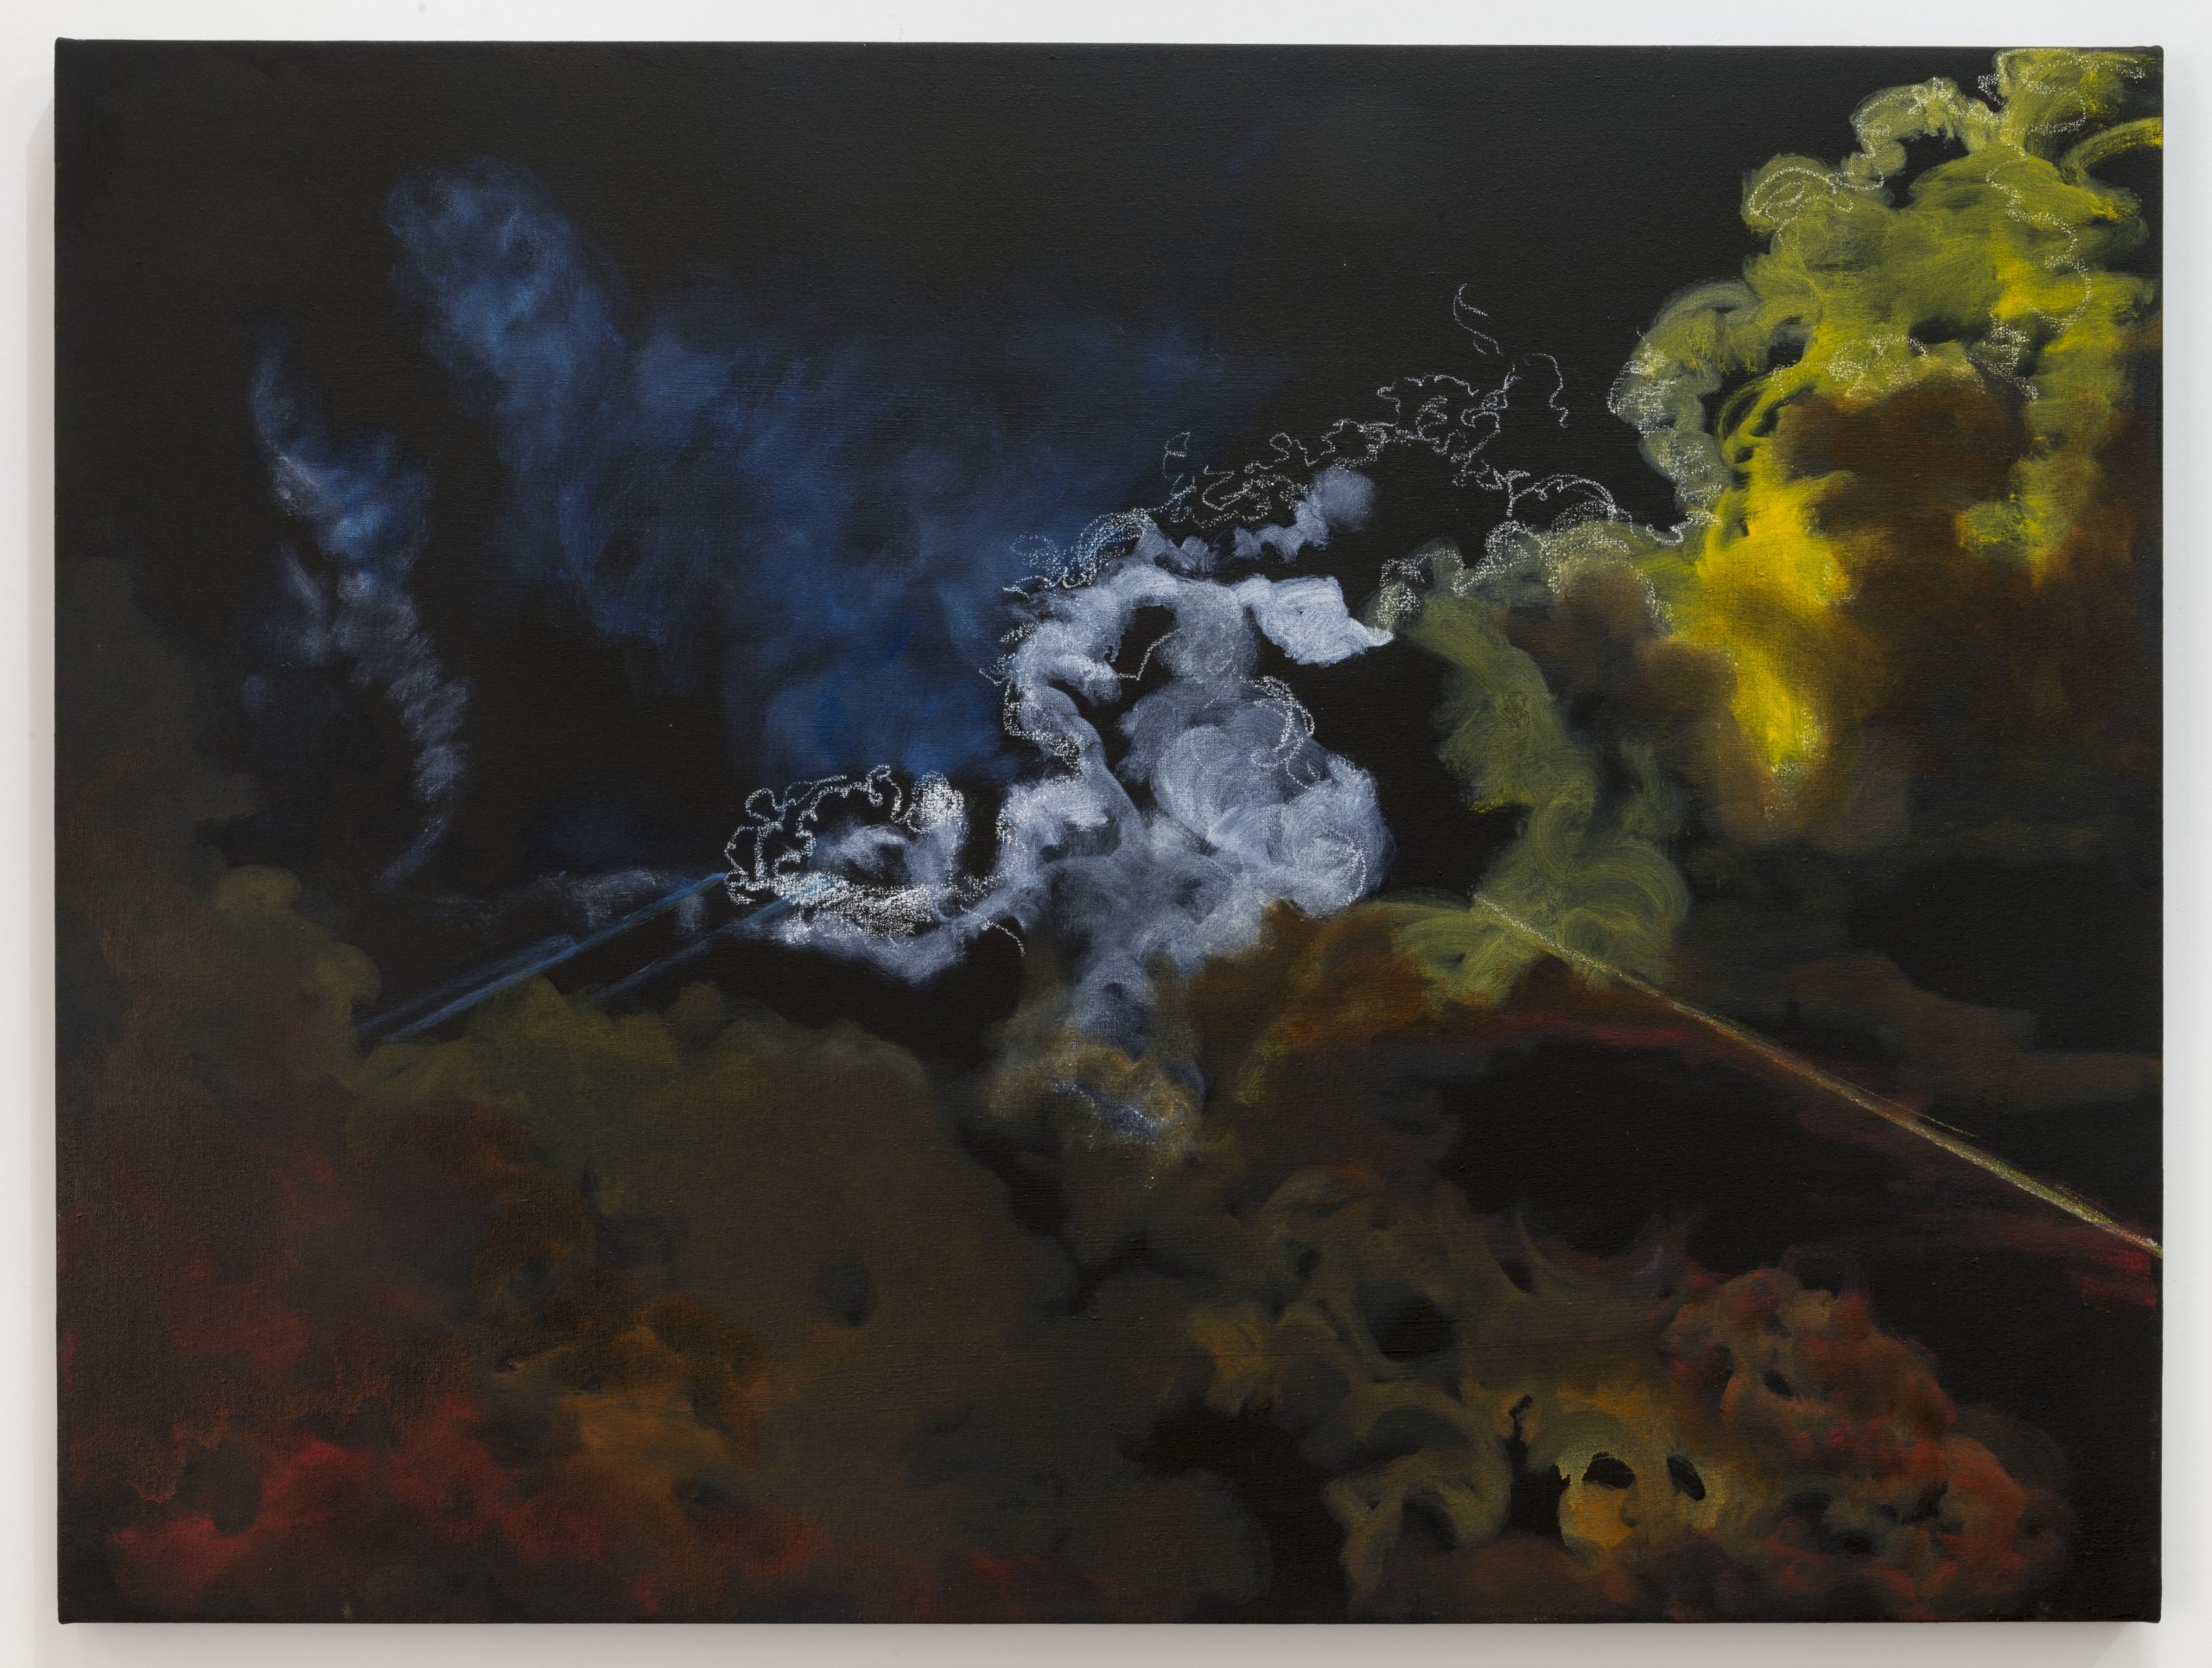 桑迪罗德里格斯，催泪瓦斯 5 号（弗格森），2015 年。布面油画。 36 x 48 英寸。由艺术家提供。照片：约书亚怀特/JWPictures.com